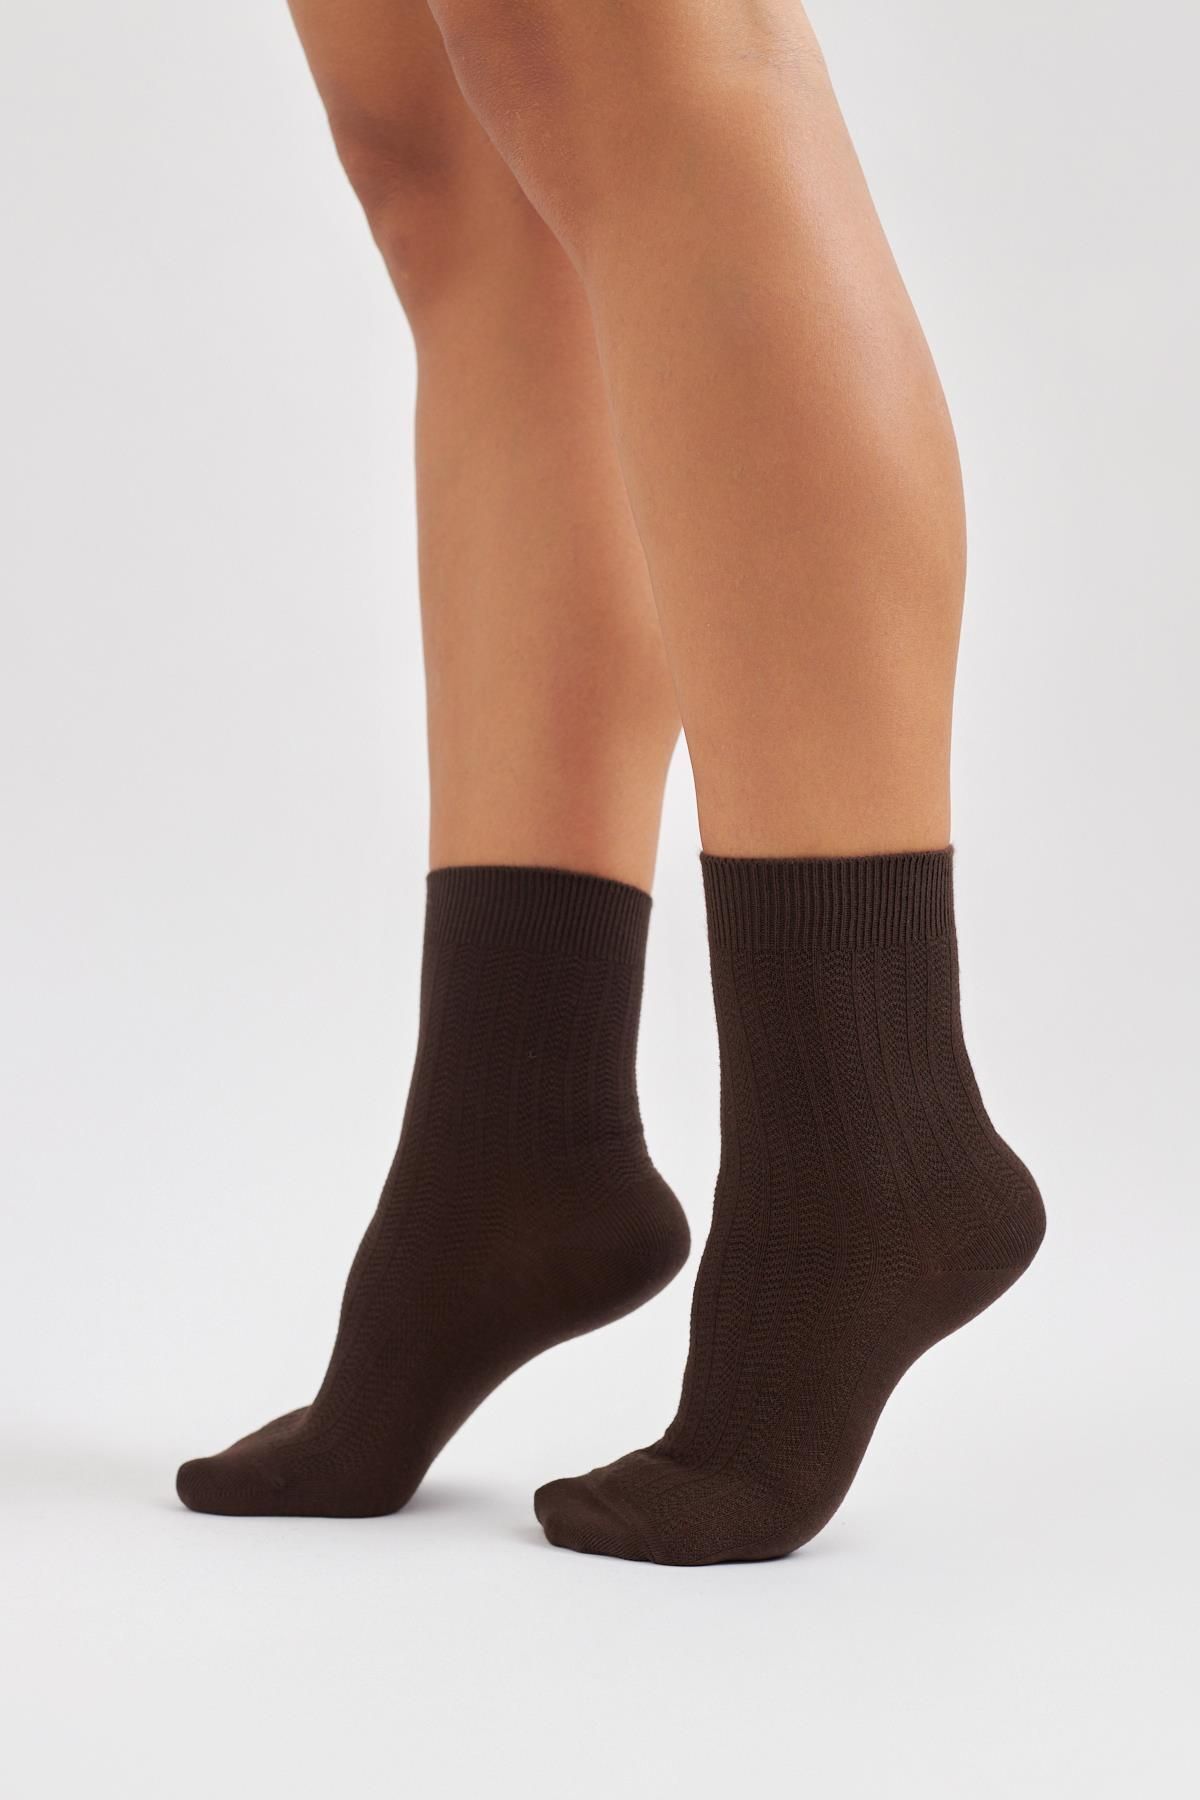 Katia & Bony Kadın Desenli Soket Çorap Kahverengi